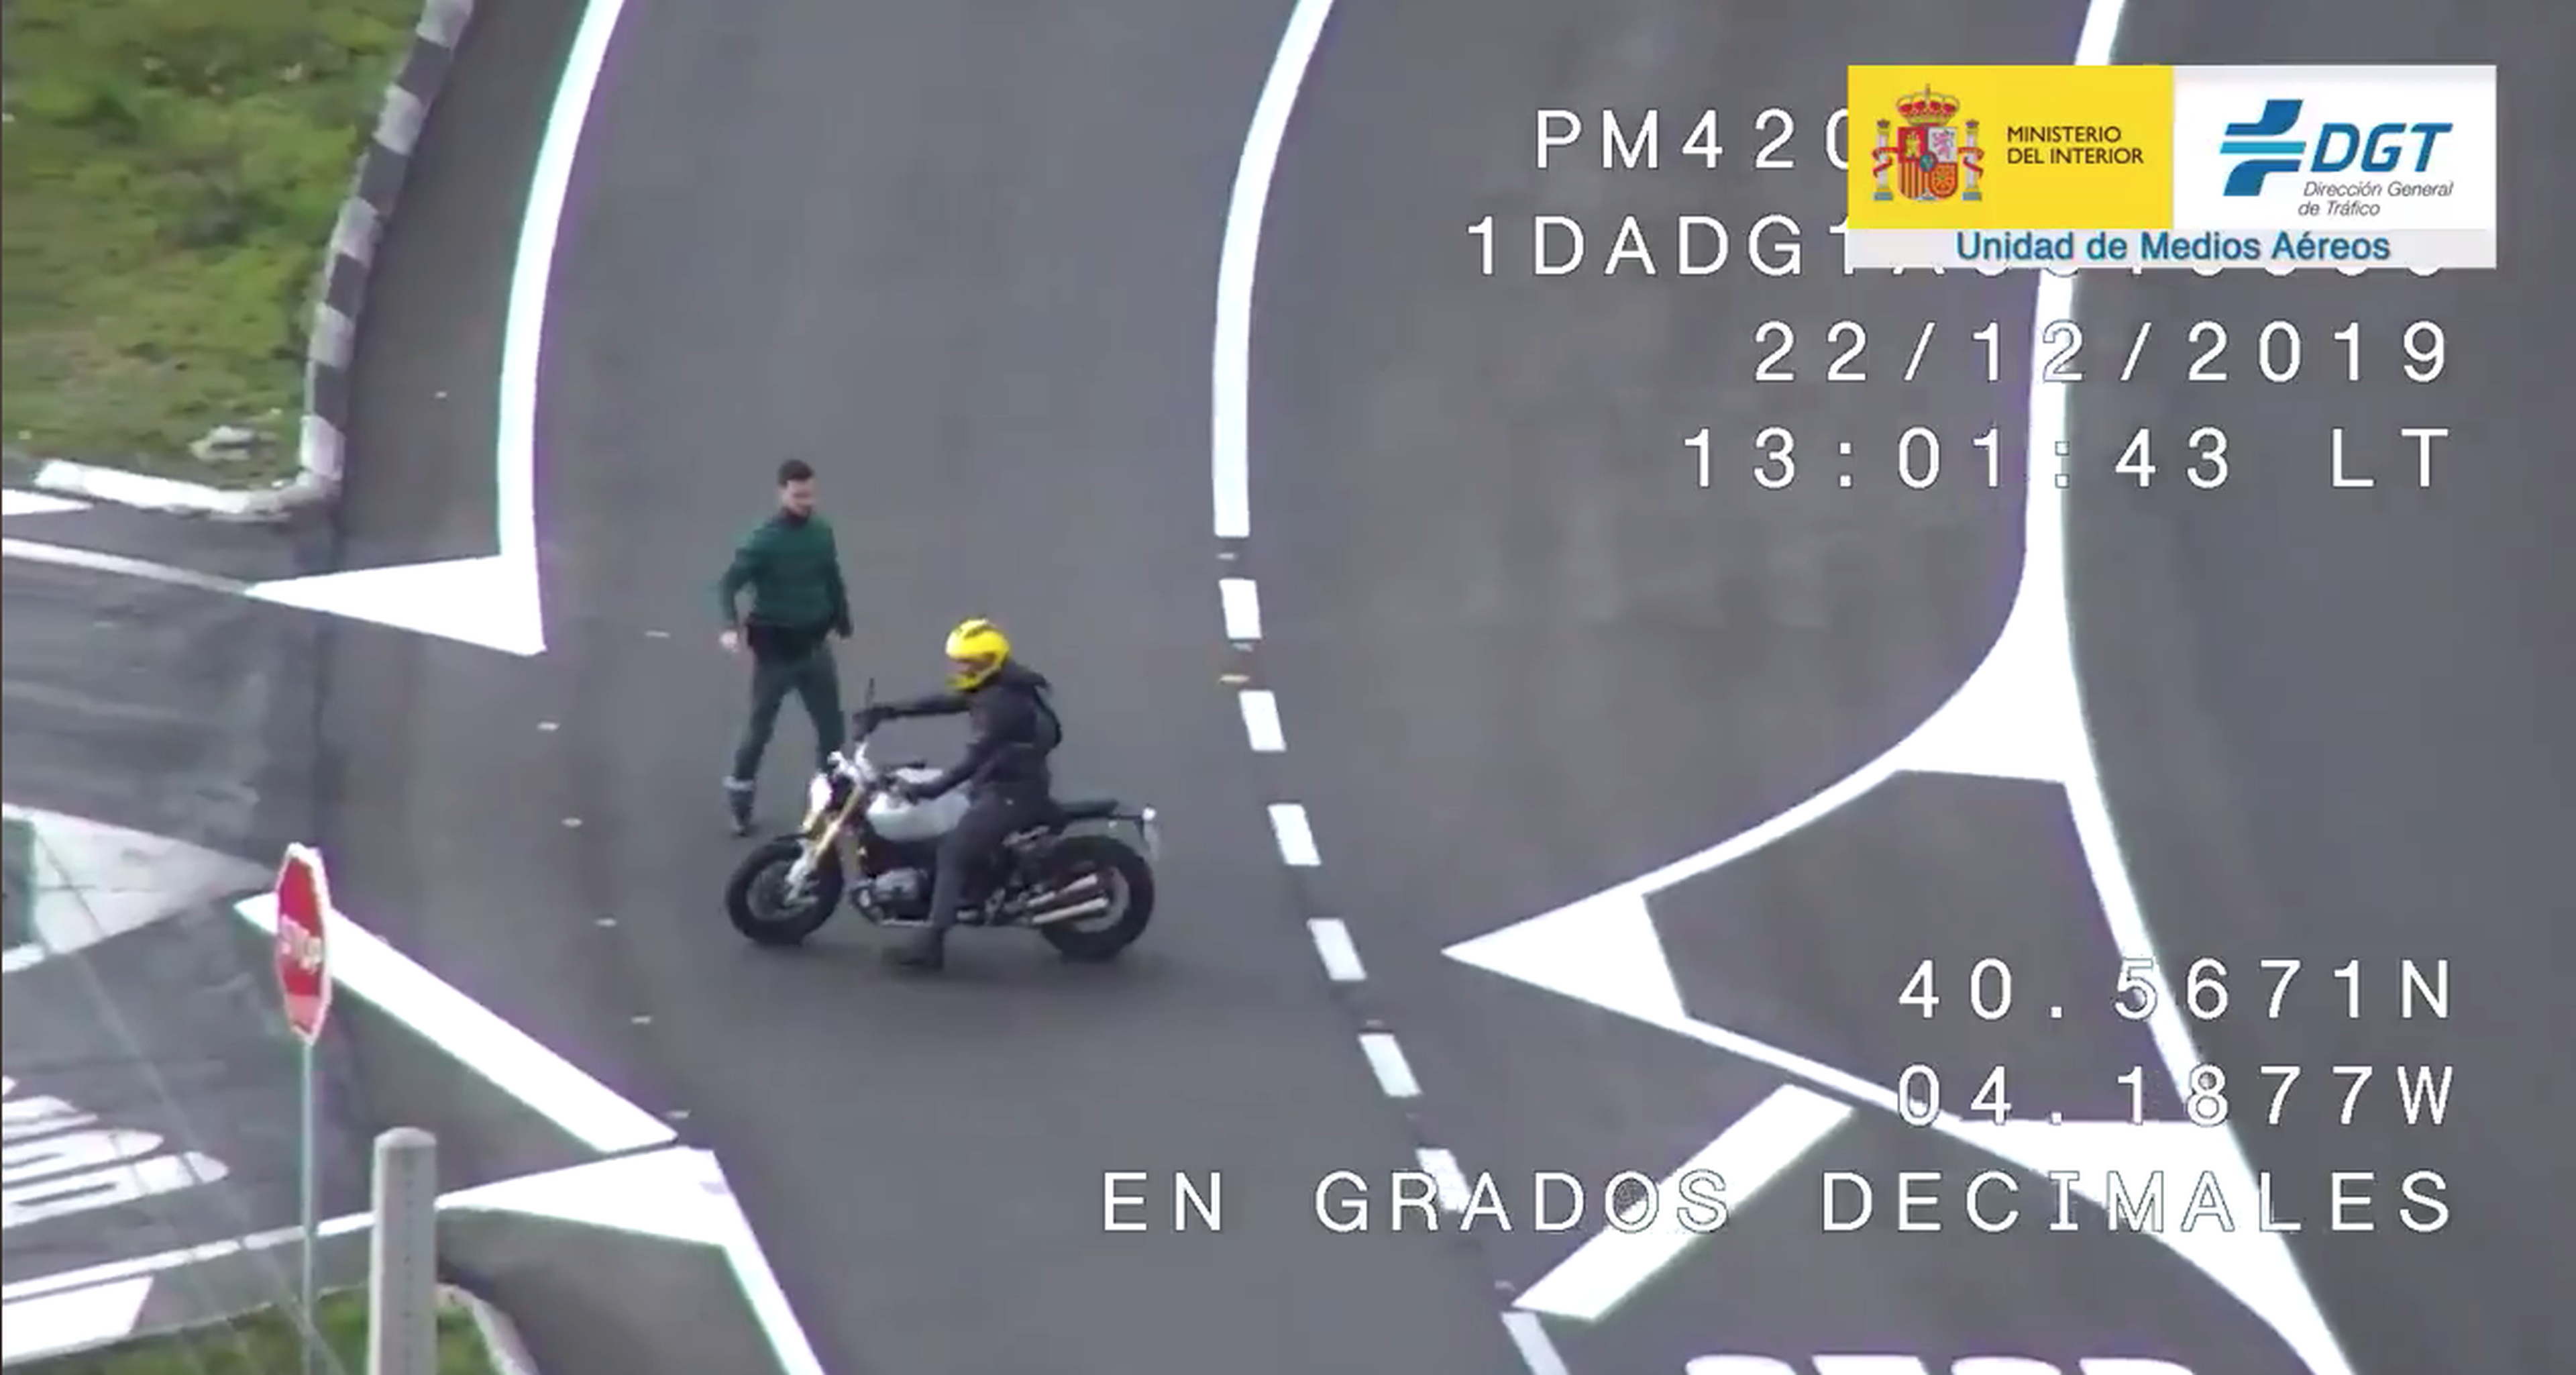 VÍDEO: Un dron de la Guardia Civil pilla a este motorista adelantando en curva y línea continua y le paran